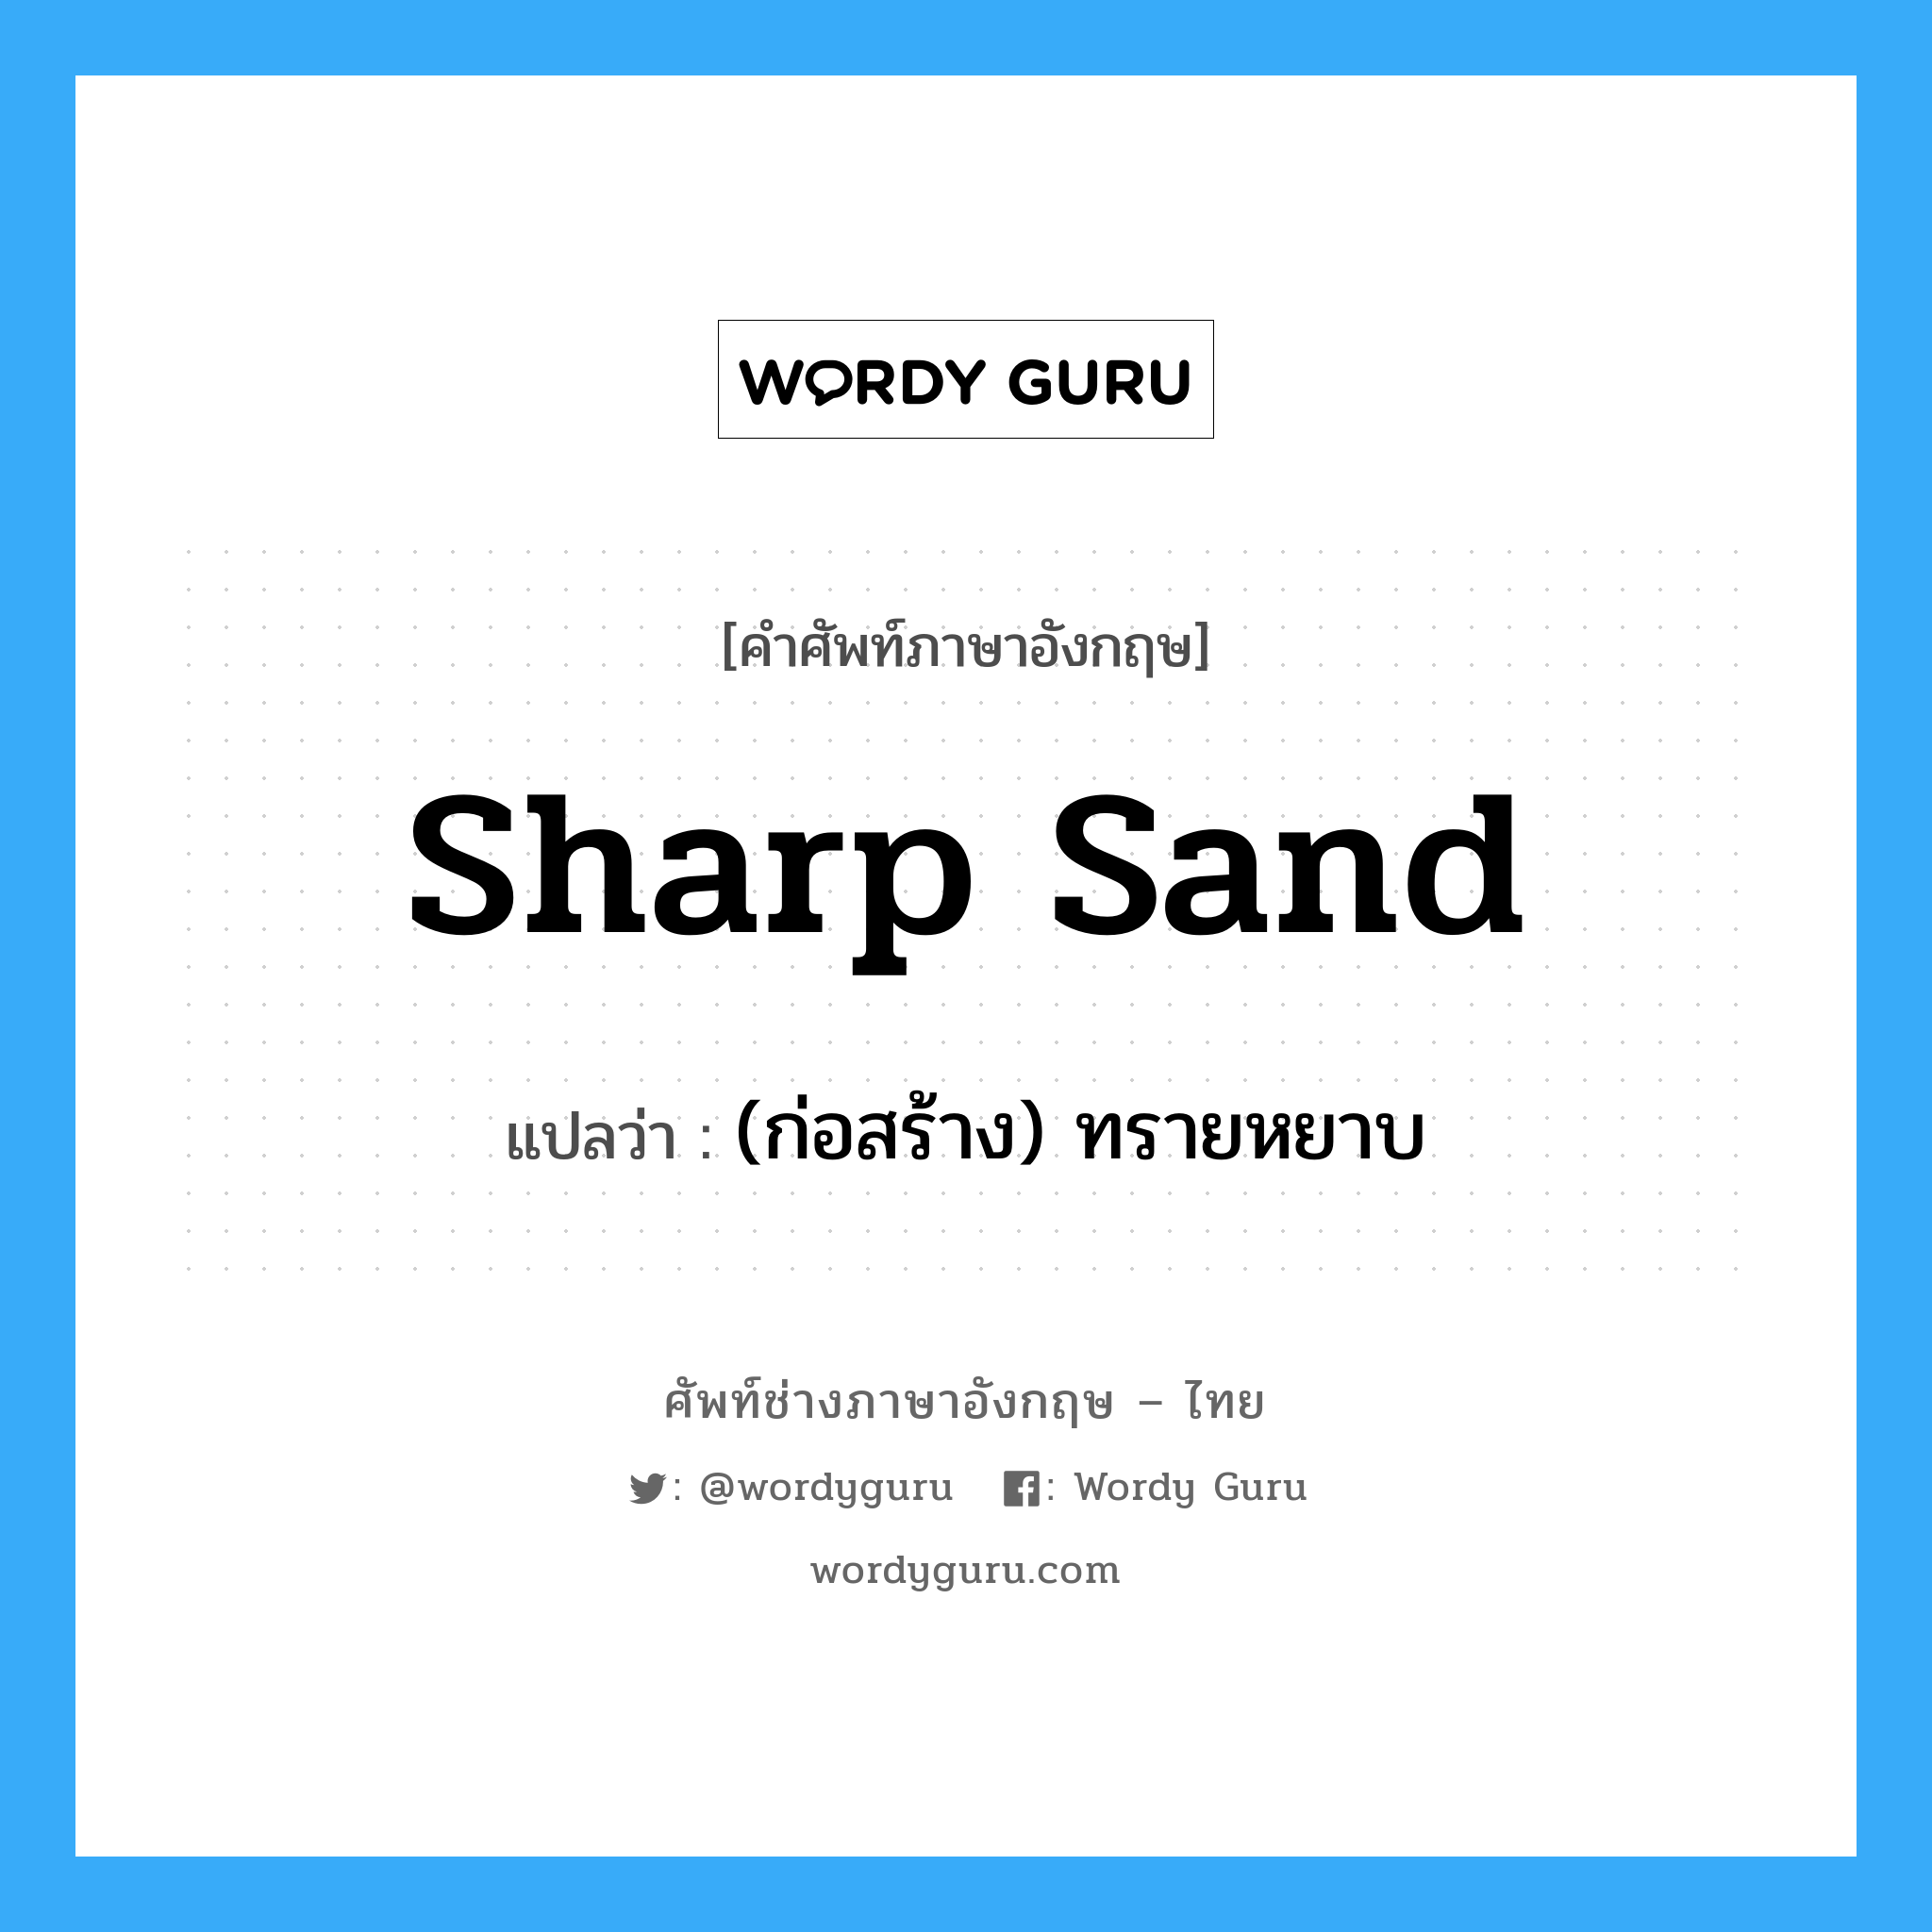 (ก่อสร้าง) ทรายหยาบ ภาษาอังกฤษ?, คำศัพท์ช่างภาษาอังกฤษ - ไทย (ก่อสร้าง) ทรายหยาบ คำศัพท์ภาษาอังกฤษ (ก่อสร้าง) ทรายหยาบ แปลว่า sharp sand